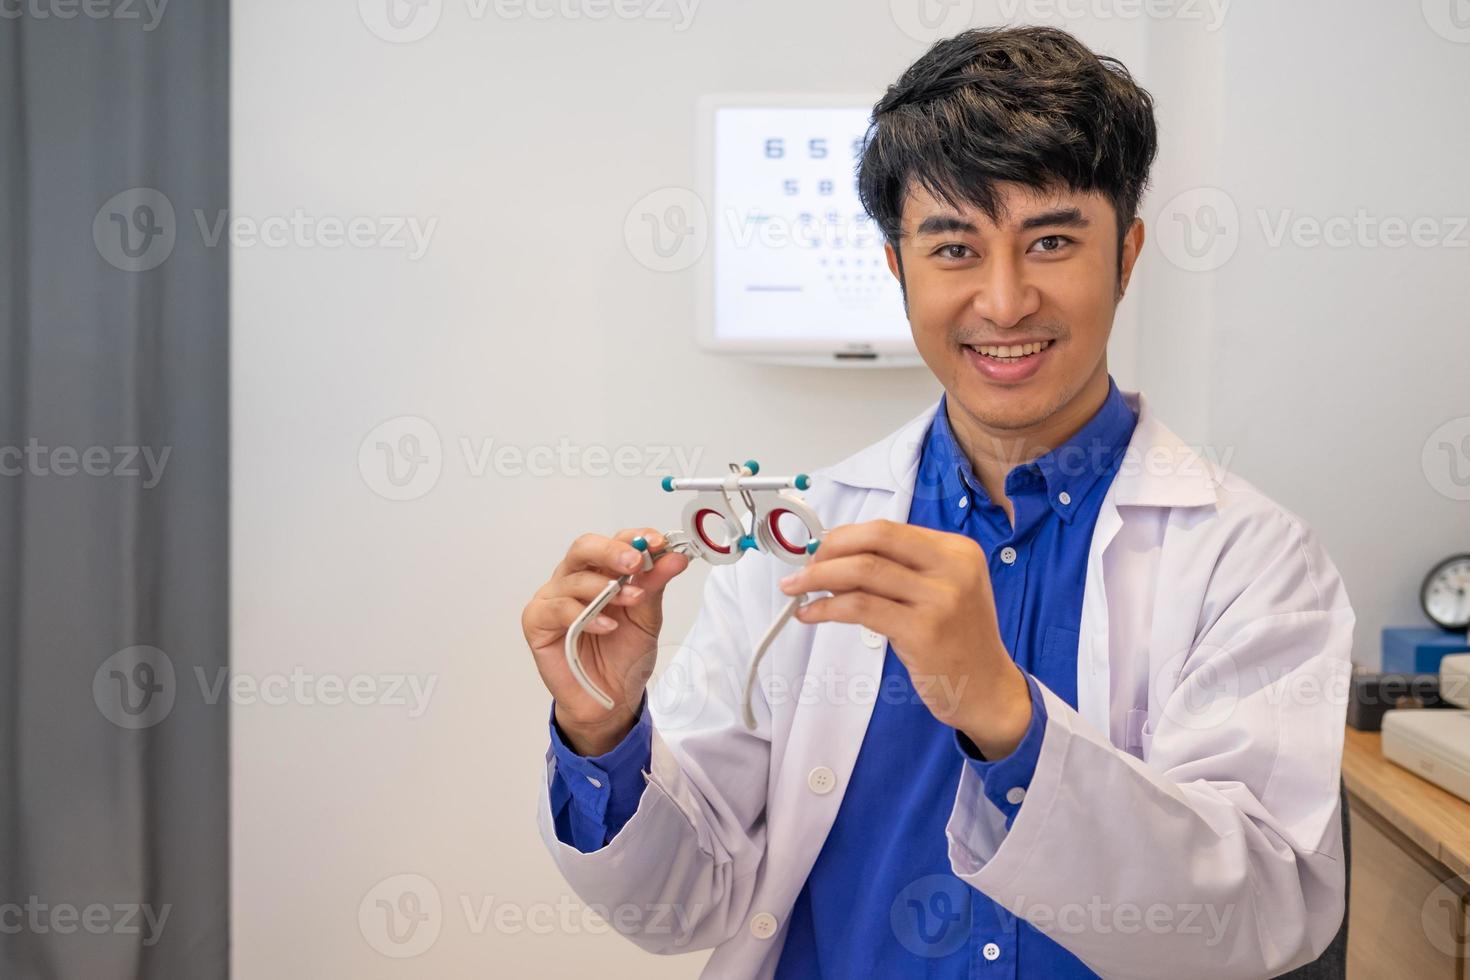 foco seletivo no quadro de trilha de optometria. médico optometrista asiático usando equipamento de óculos de trilha para examinar o sistema visual de visão do paciente para resolver o problema de visão. foto